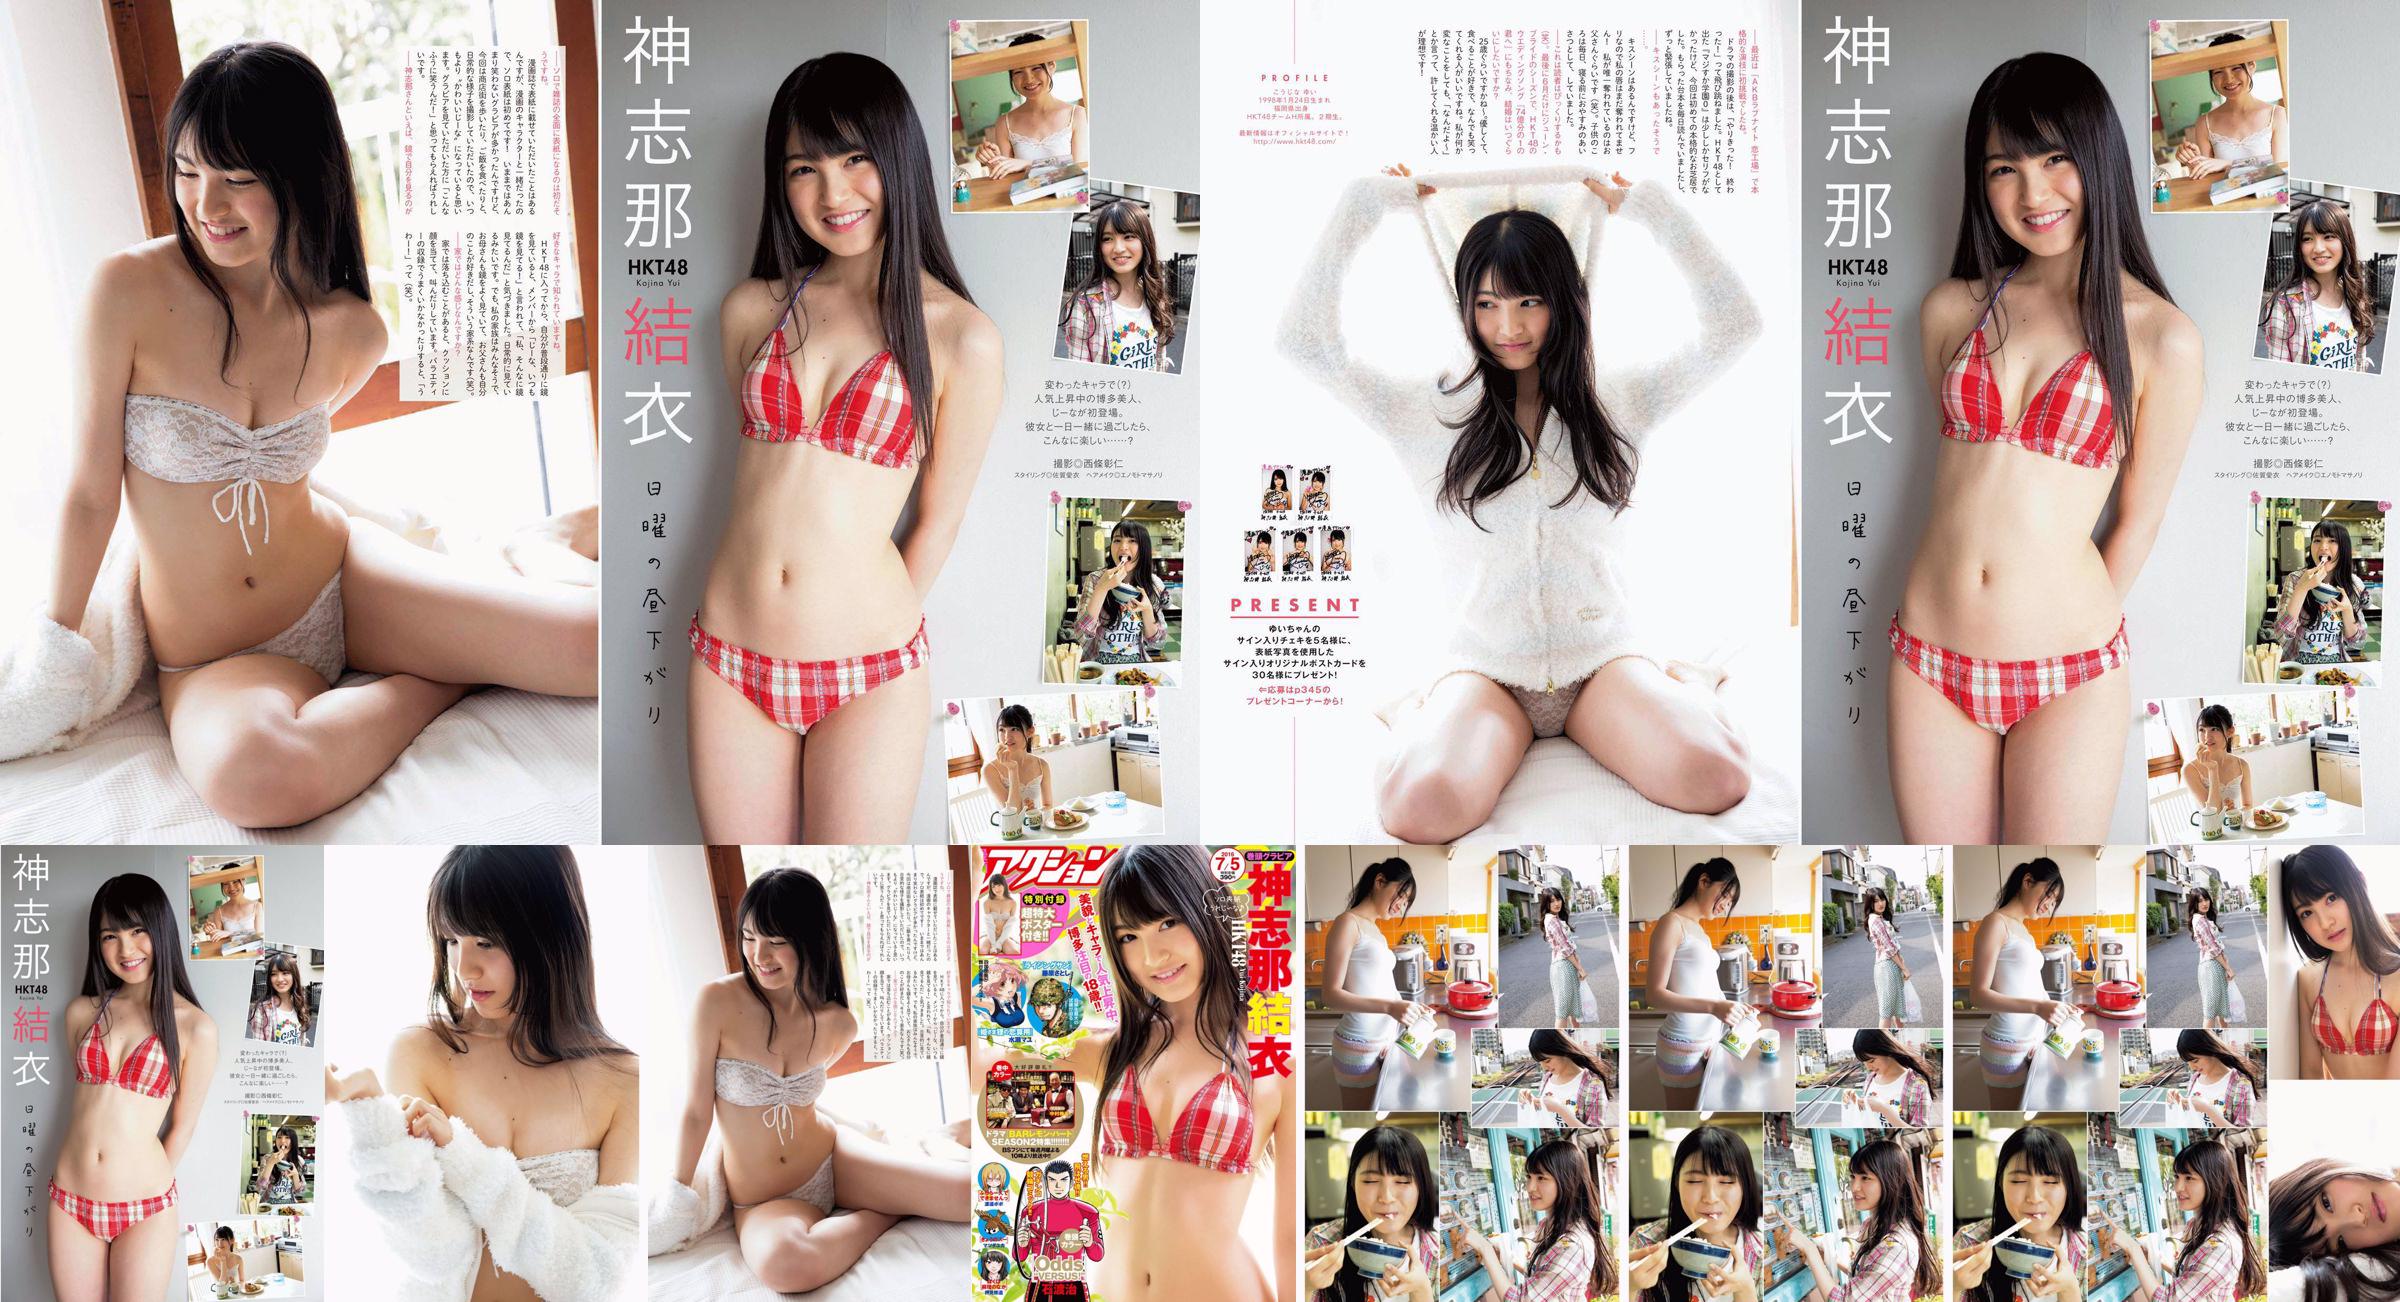 [Manga Action] Shinshina Yui 2016 No.13 Photo Magazine No.b332b1 Page 1